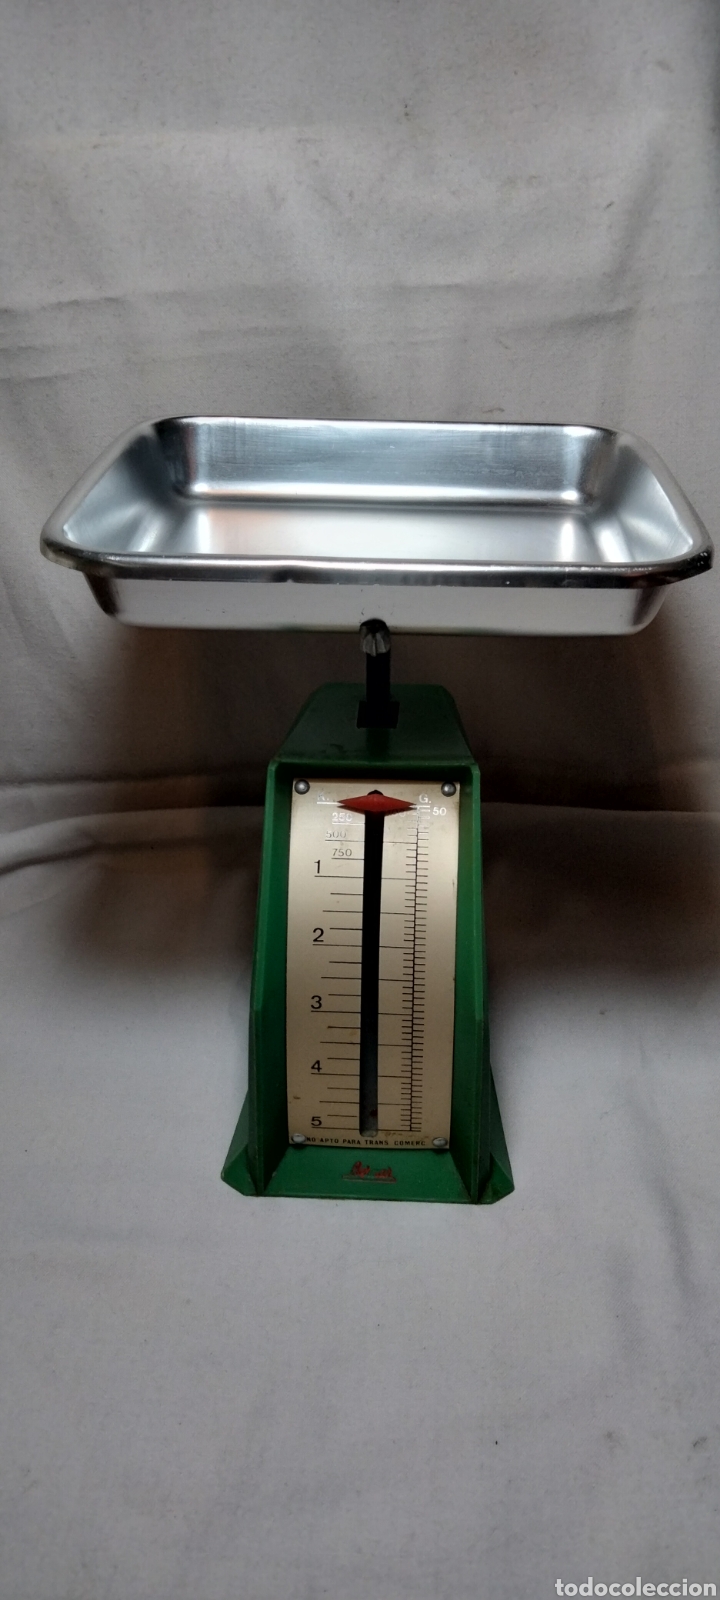 báscula o peso de cocina, marca bernar. años 50 - Compra venta en  todocoleccion